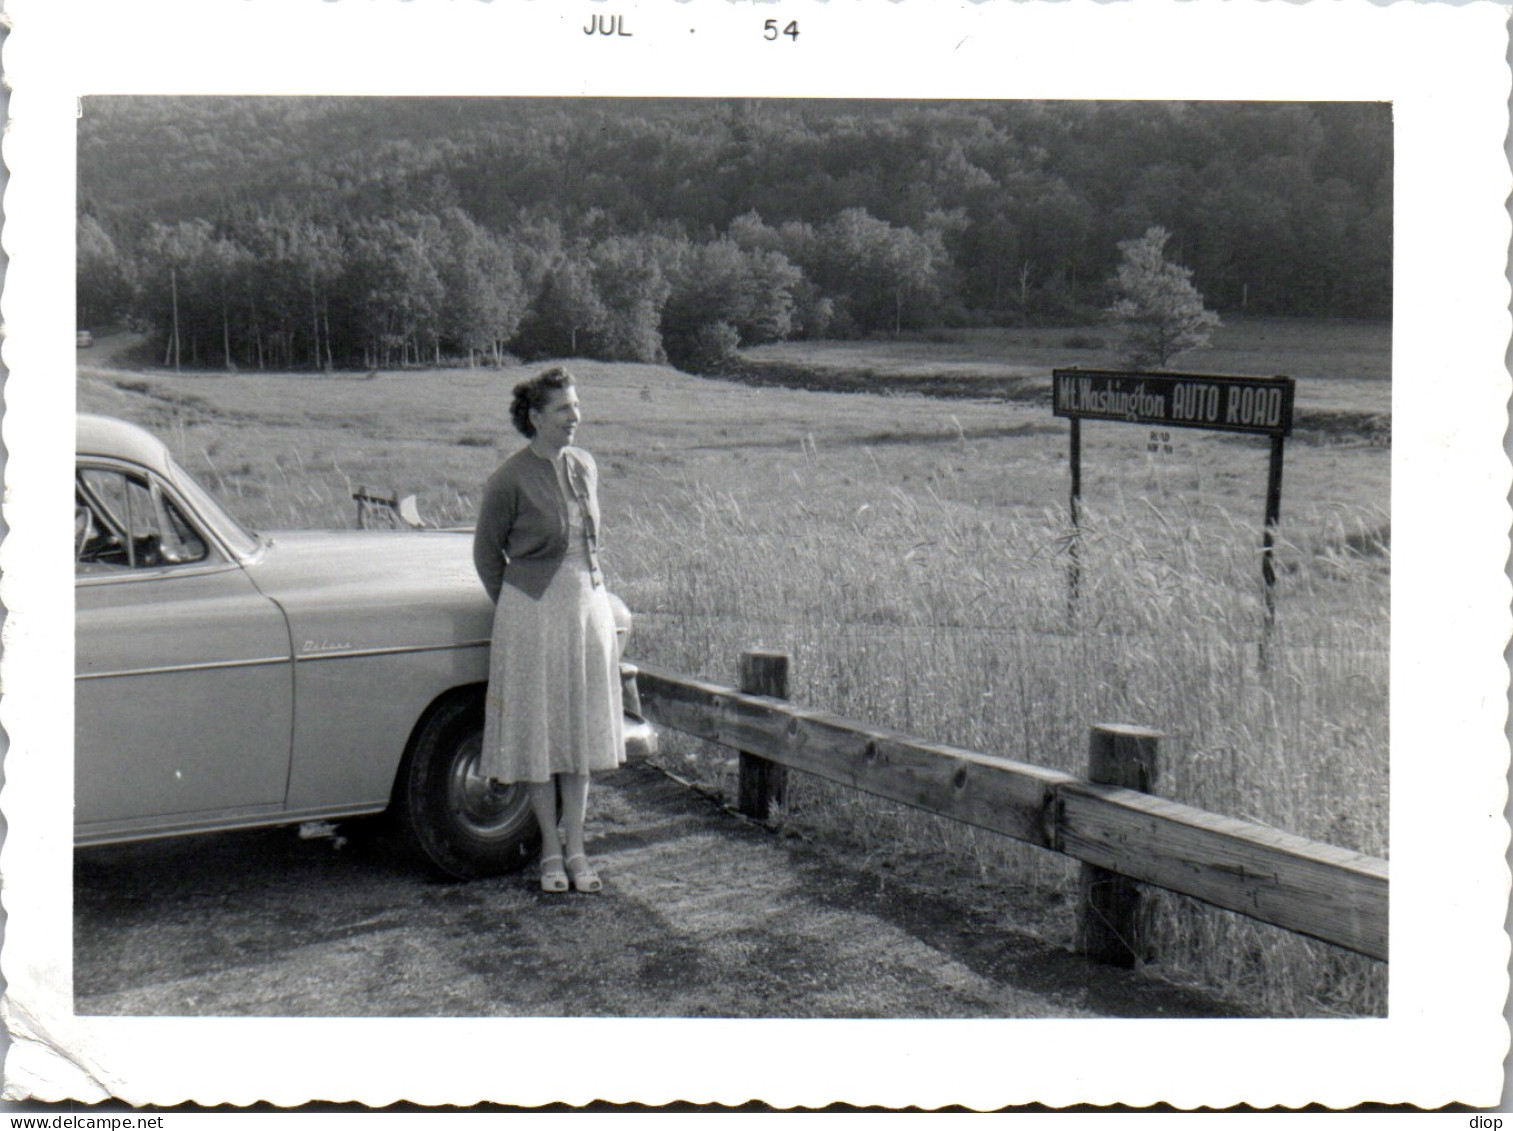 Photographie Photo Vintage Snapshot Amateur Automobile Voiture Auto Femme - Automobile